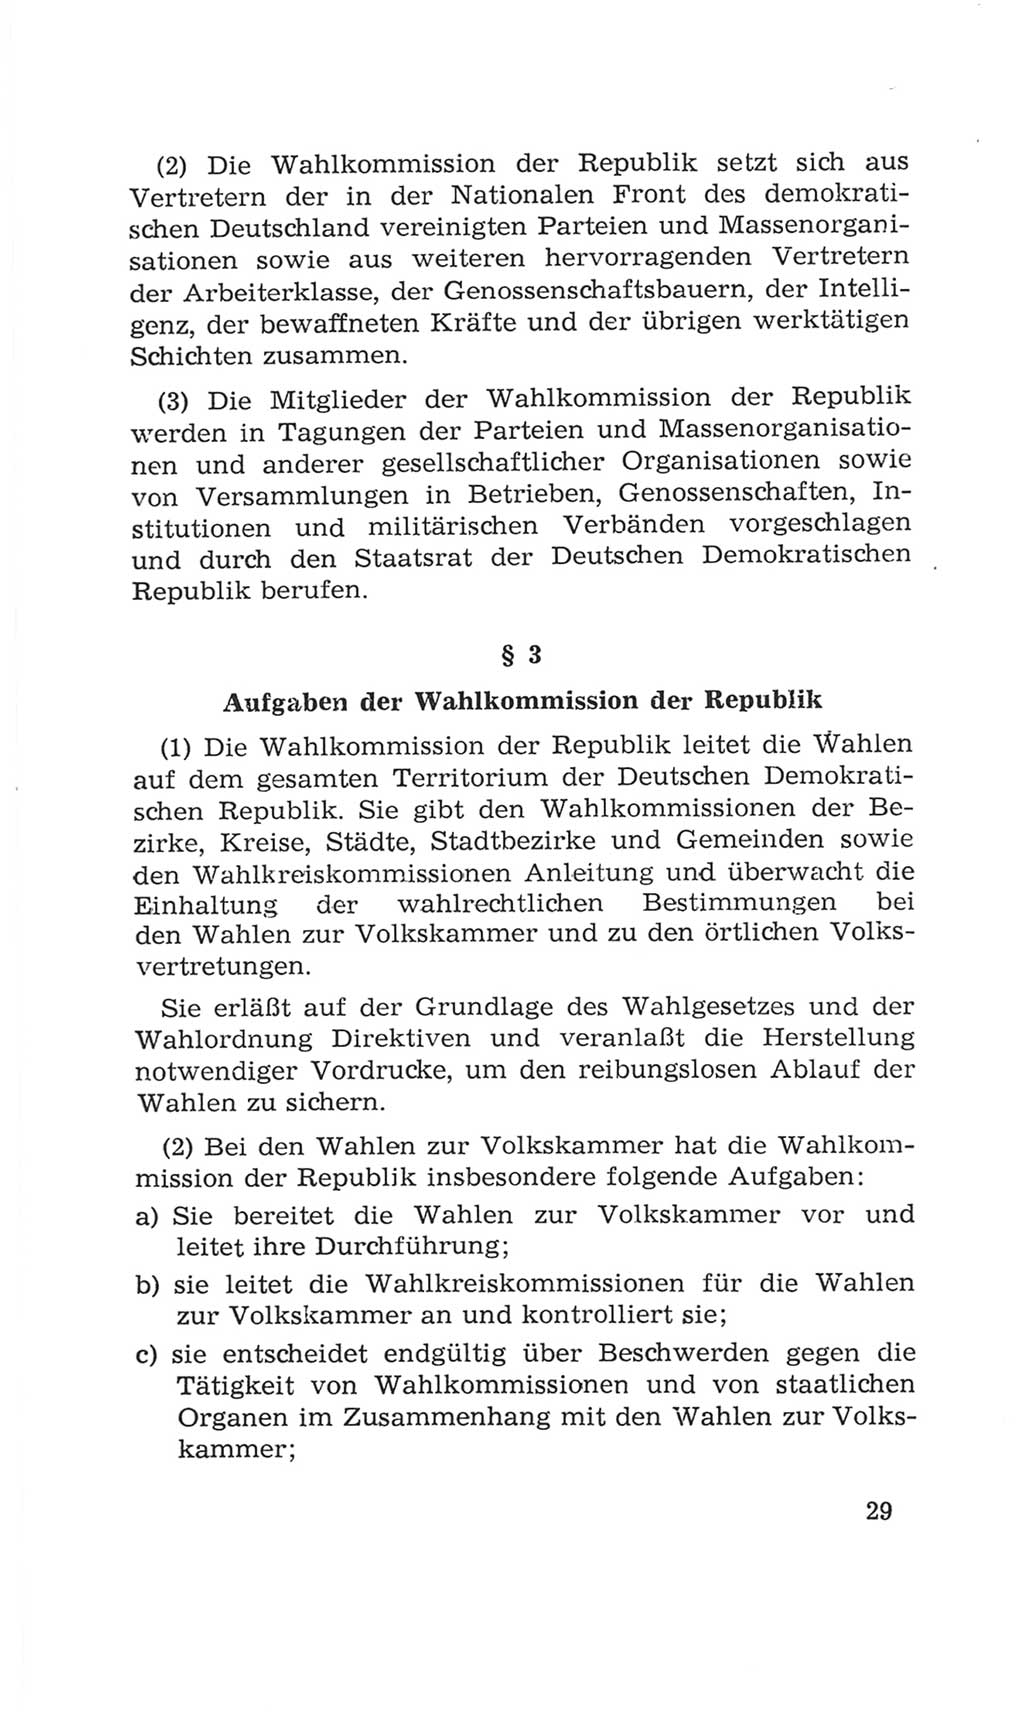 Volkskammer (VK) der Deutschen Demokratischen Republik (DDR), 4. Wahlperiode 1963-1967, Seite 29 (VK. DDR 4. WP. 1963-1967, S. 29)